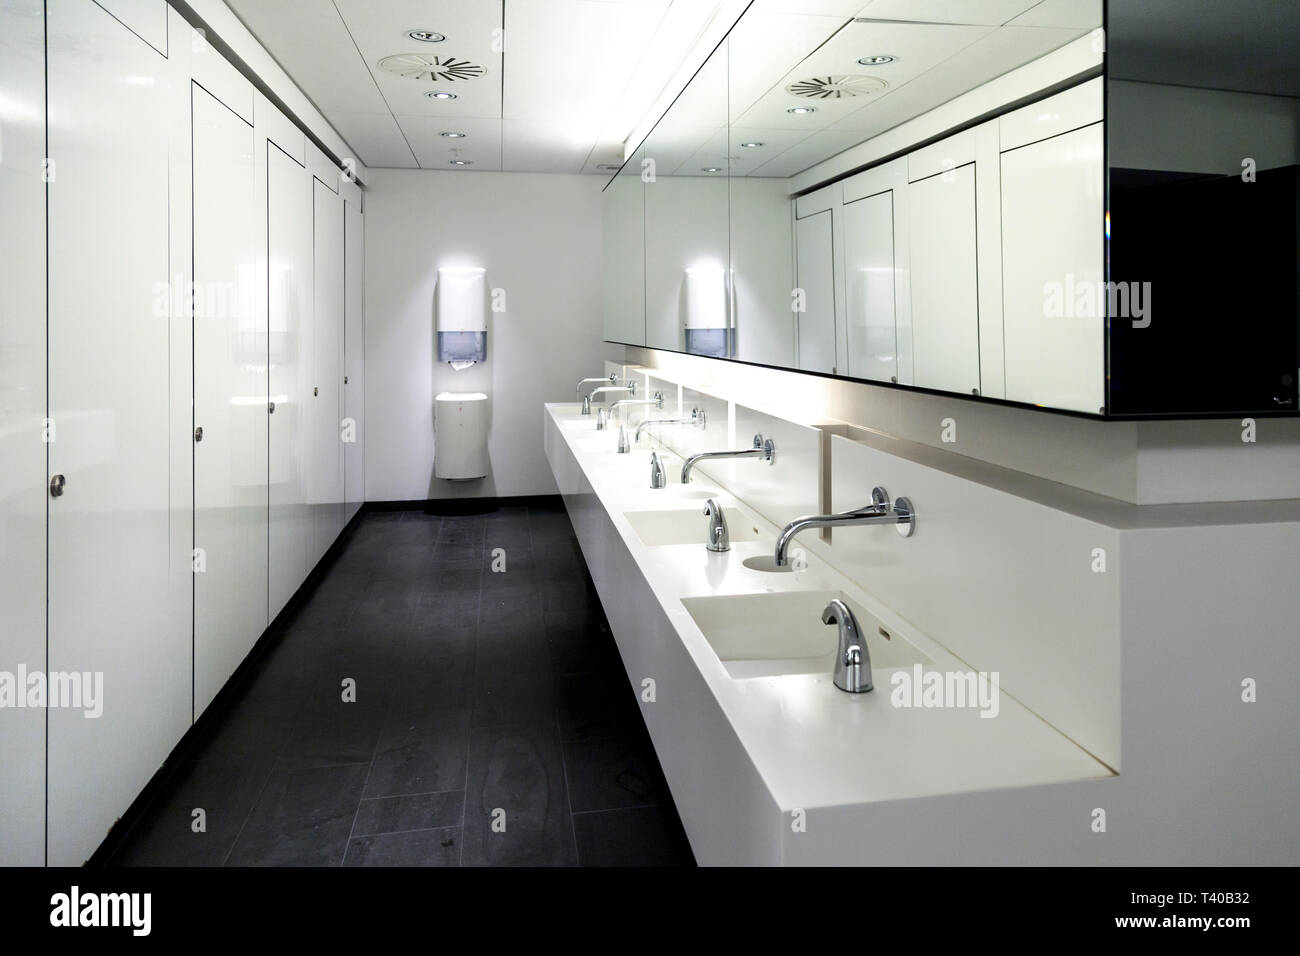 Monocromatico pubblico moderno bagno interno Foto Stock